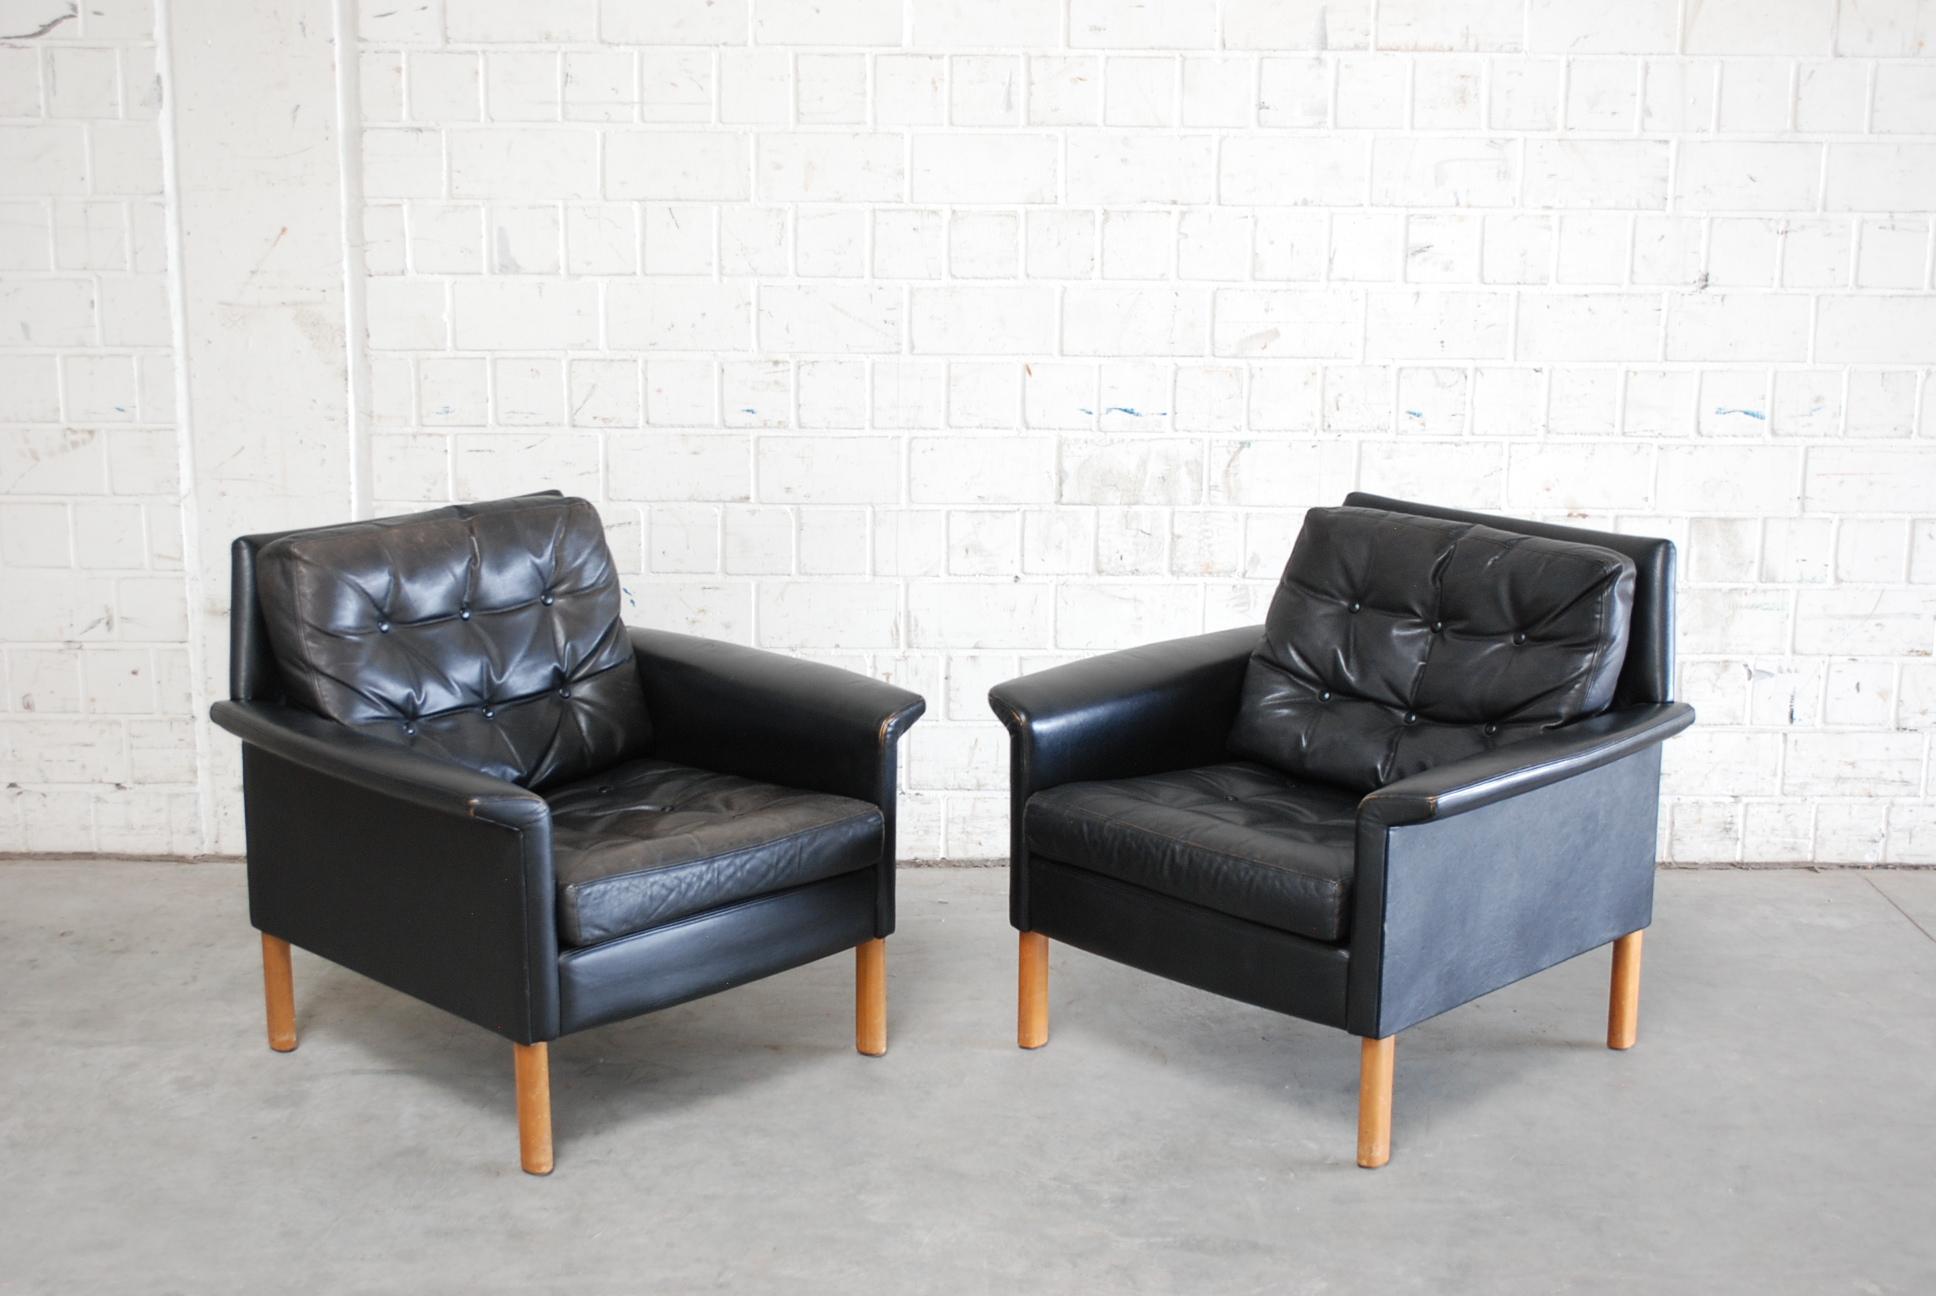 Une paire de fauteuils en cuir noir de Rudolf Glatzel fabriqués par la manufacture allemande Kill International.
Un grand design des années 1960.
 